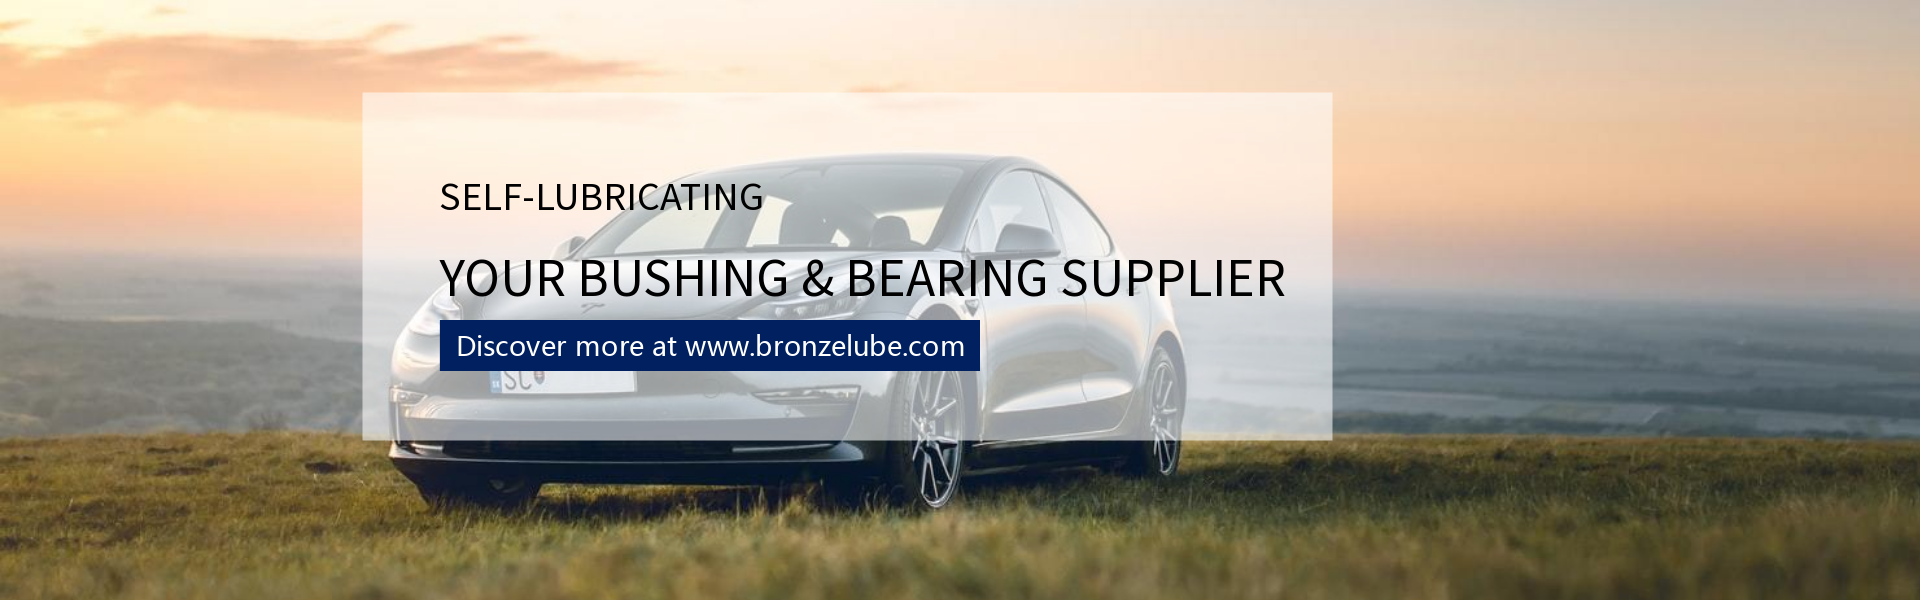 self-lubricating bushing & bearing supplier